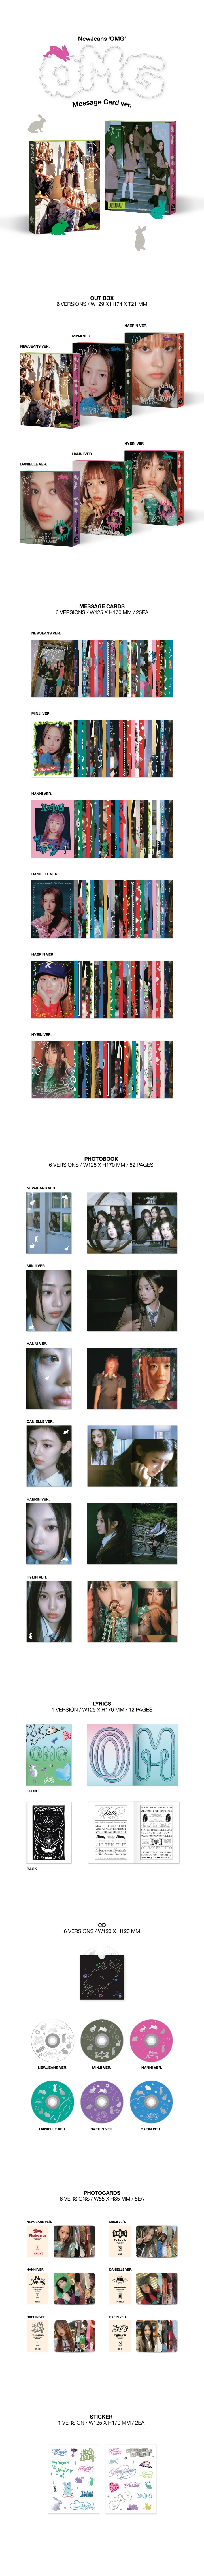 newjeans-omg-1st-single-album-message-card-contents